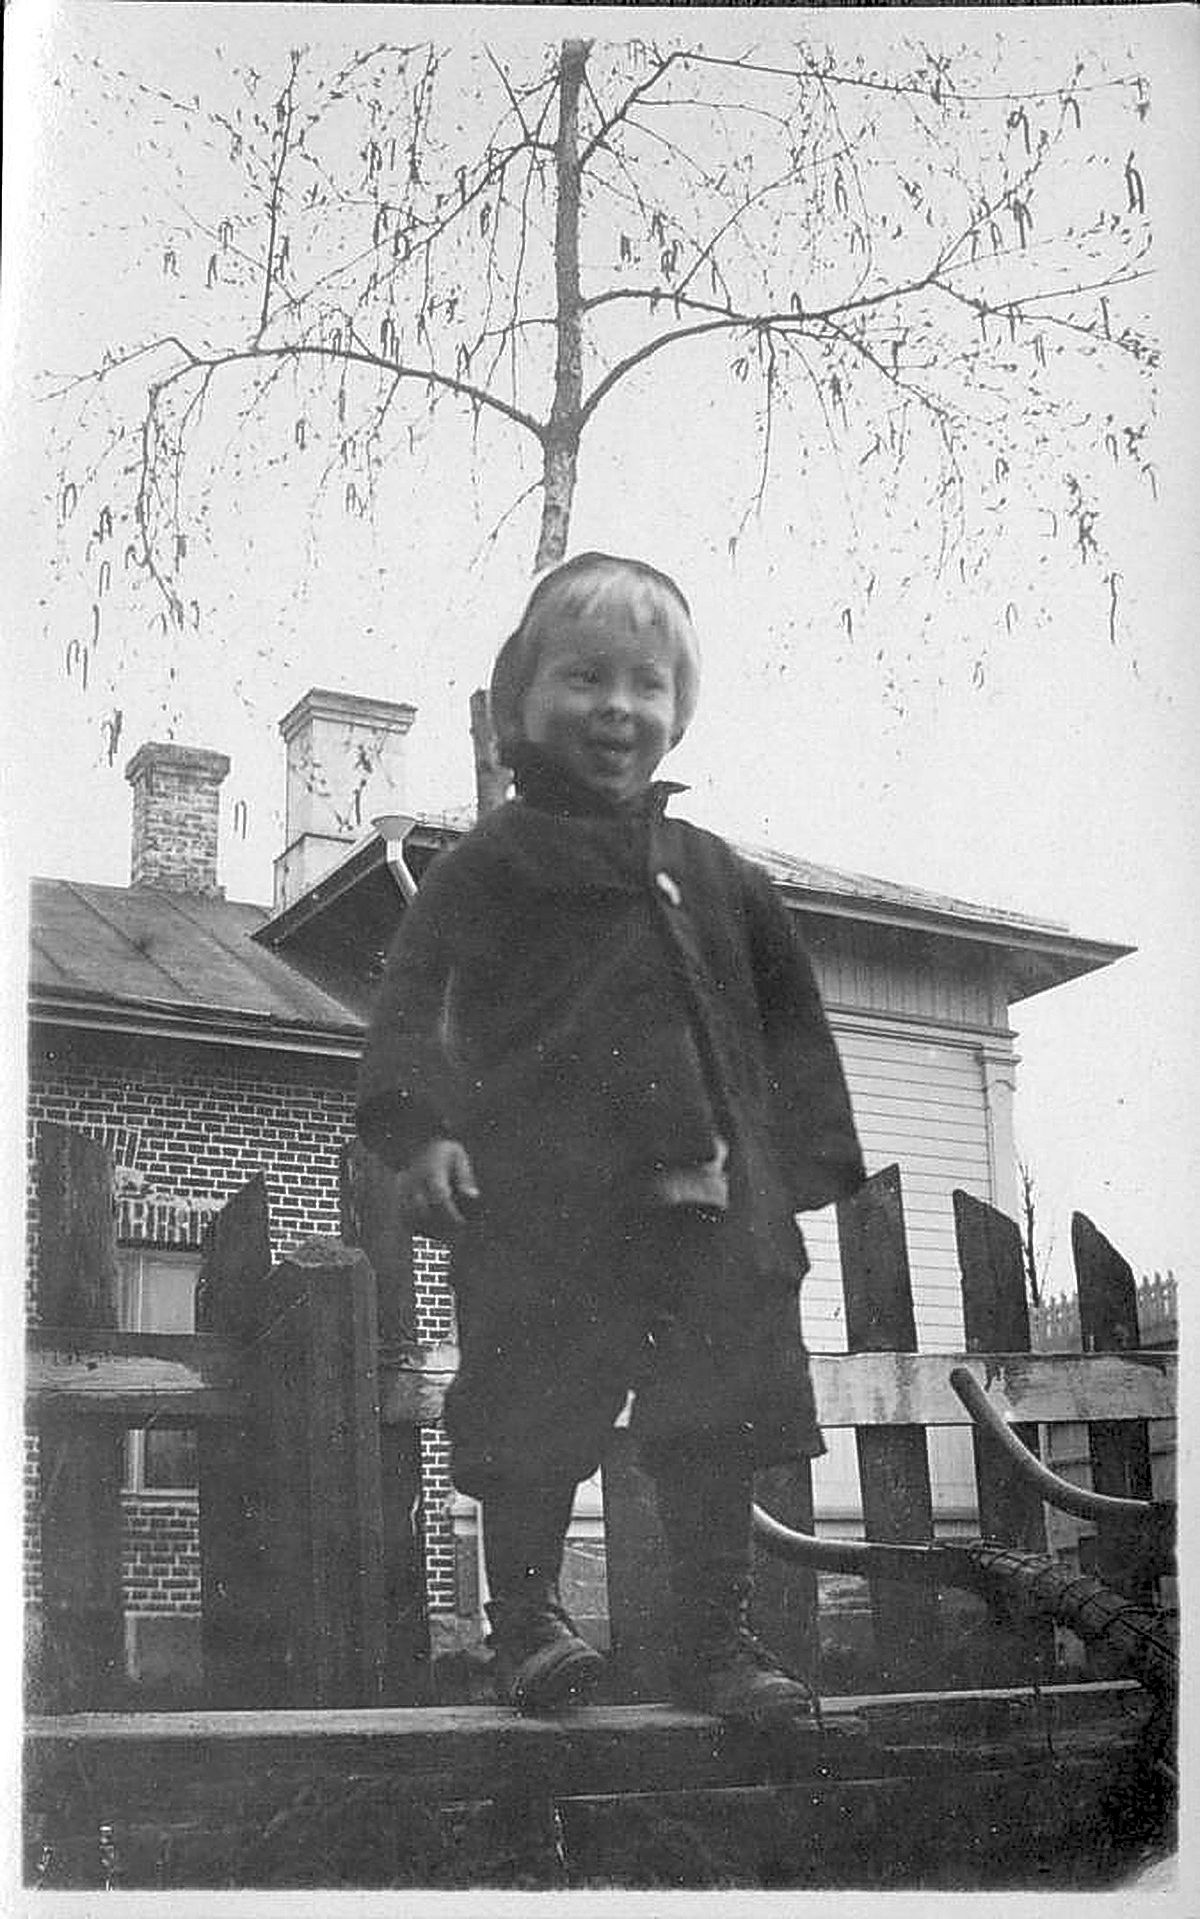 Valokuva ei valehtele. Tämä pikkumies nautti selvästikin olostaan Wännin lastentarhassa. Kuva lienee otettu 1920-30-luvulla.